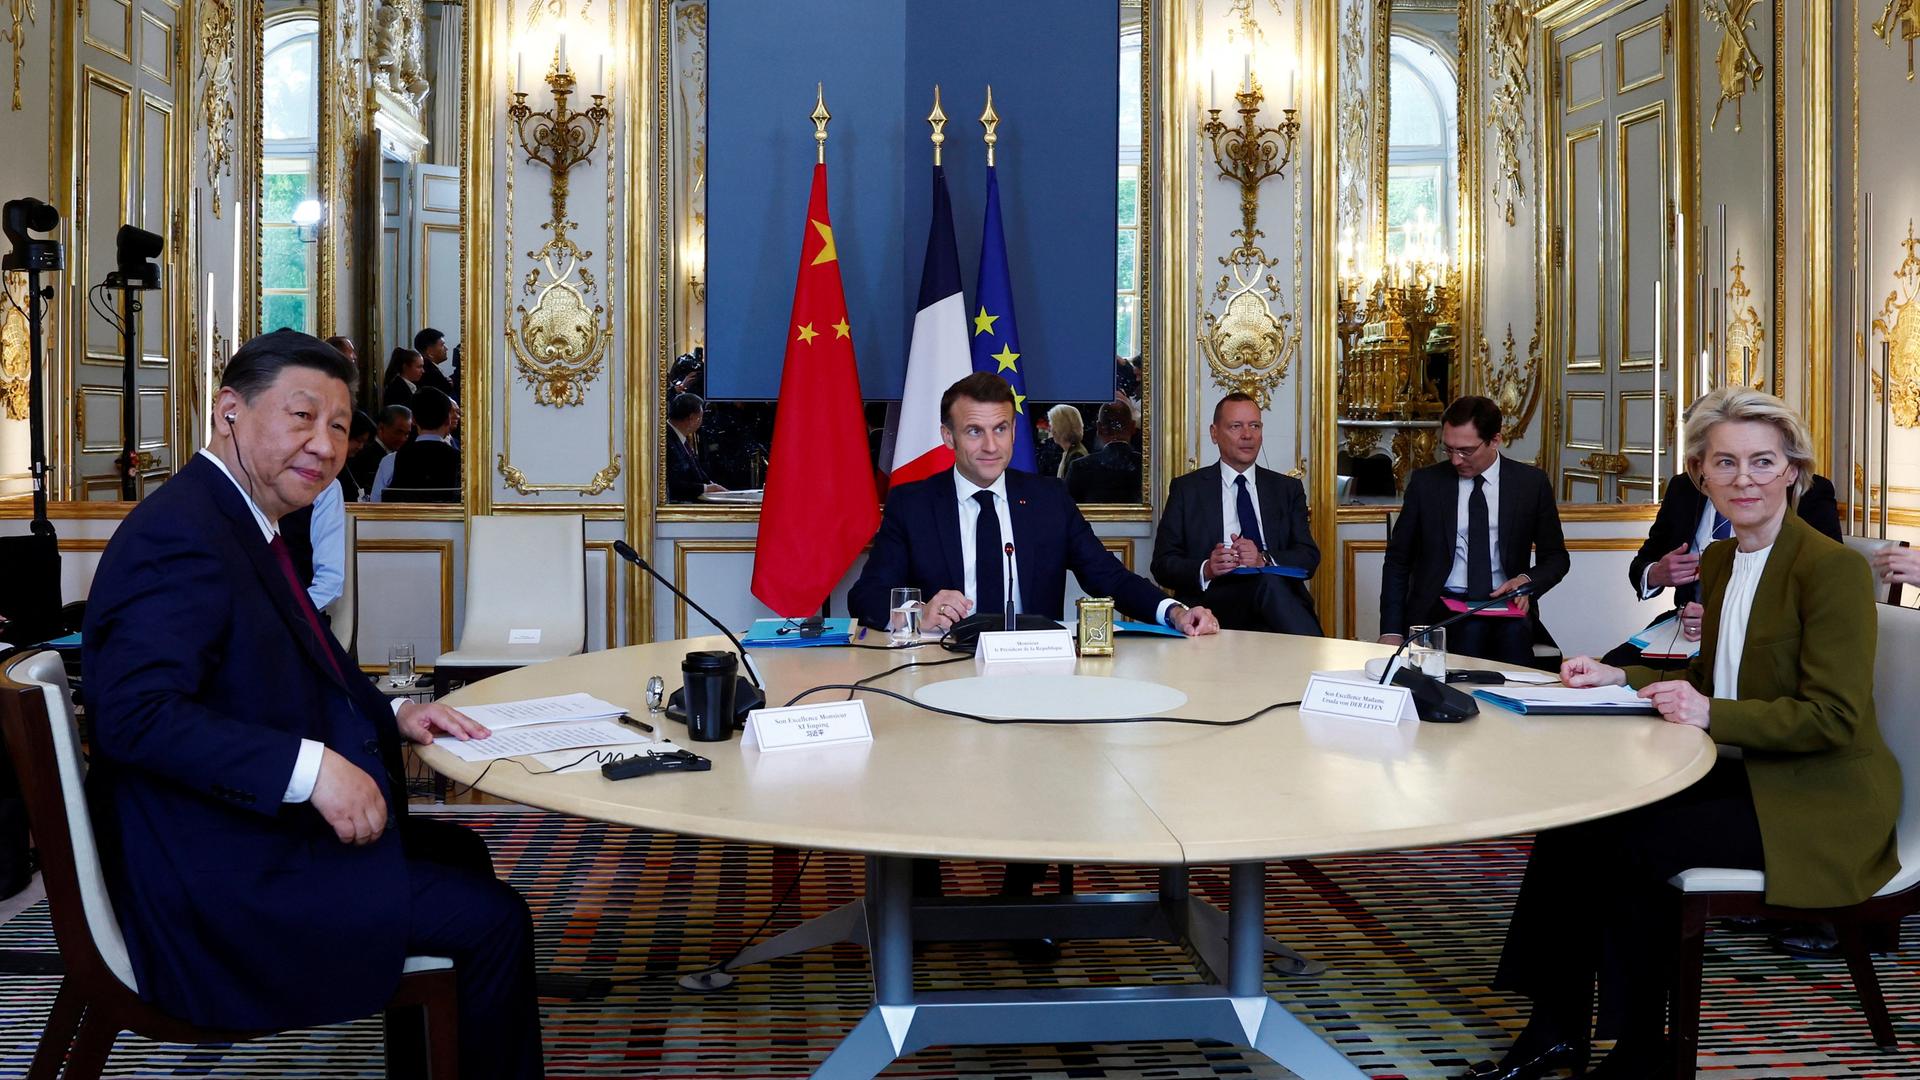  Der französische Präsident Emmanuel Macron (M), Chinas Präsident Xi Jinping (l) und die Präsidentin der Europäischen Kommission Ursula von der Leyen sitzen an einem runden Tisch.